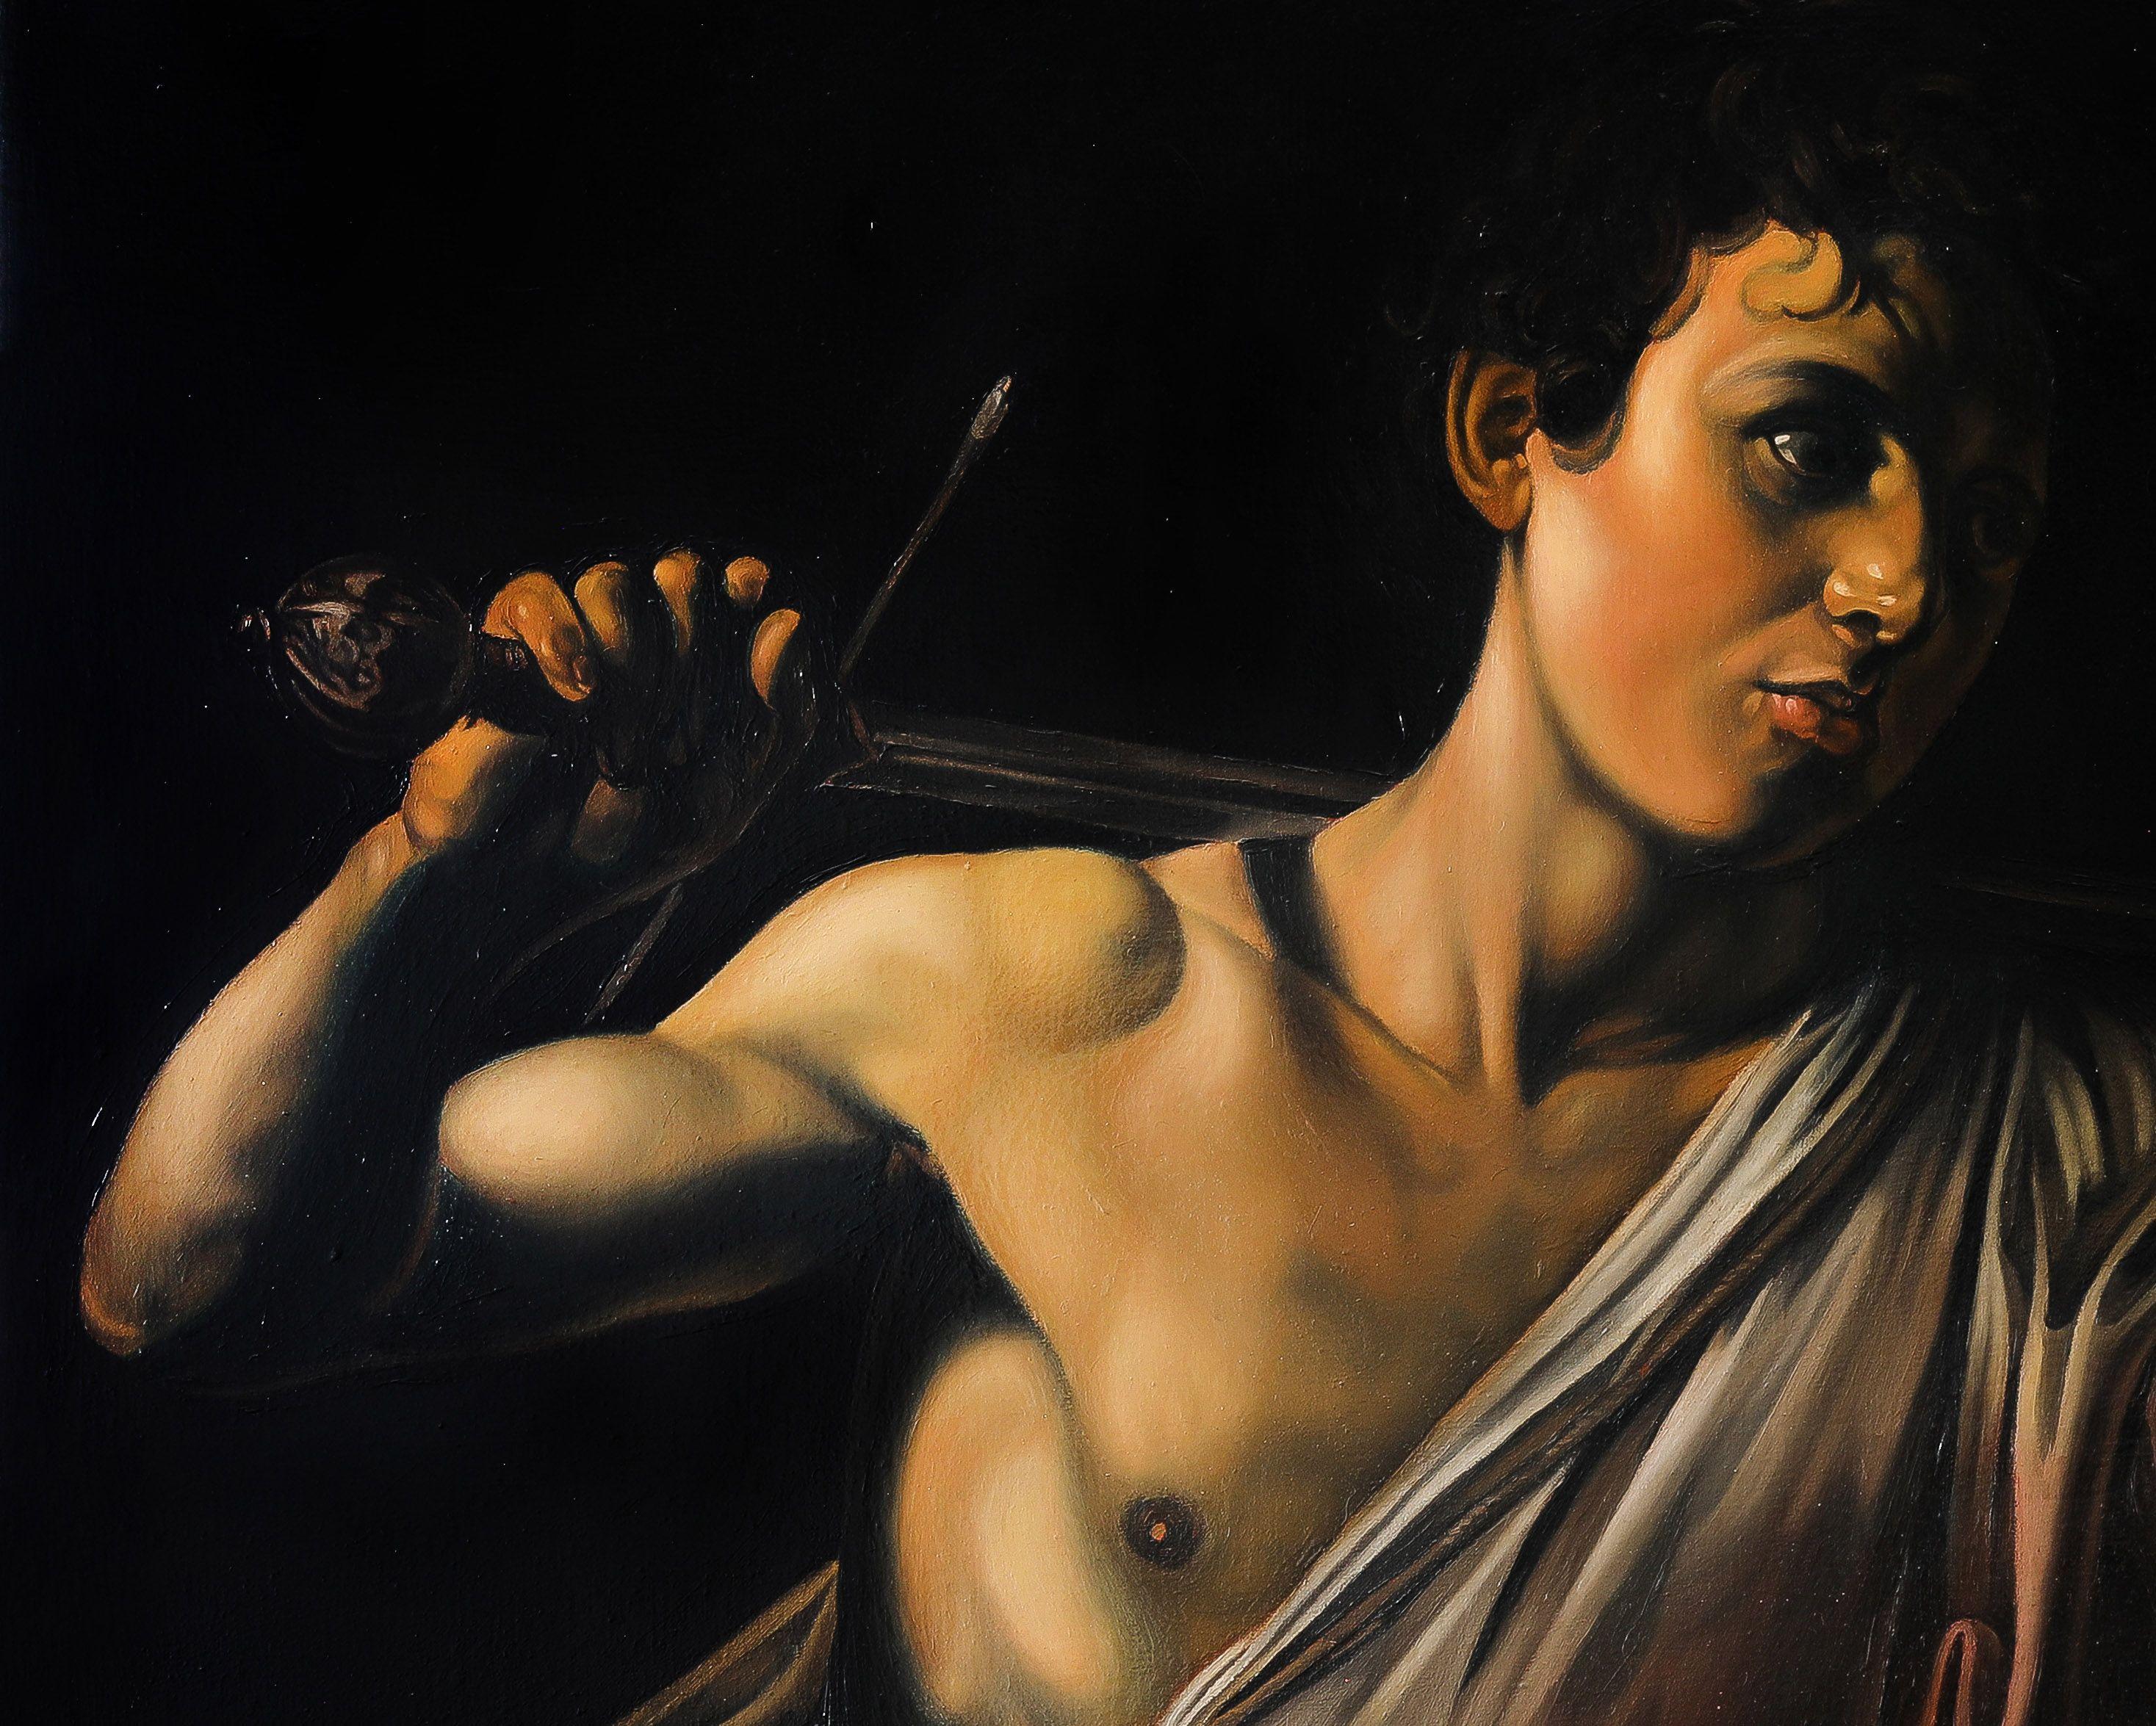 David mit Kopf von Caravaggio, aus dem Heiligen Bildtu, Gemälde, Öl auf Leinwand (Realismus), Painting, von Roman Rembovsky